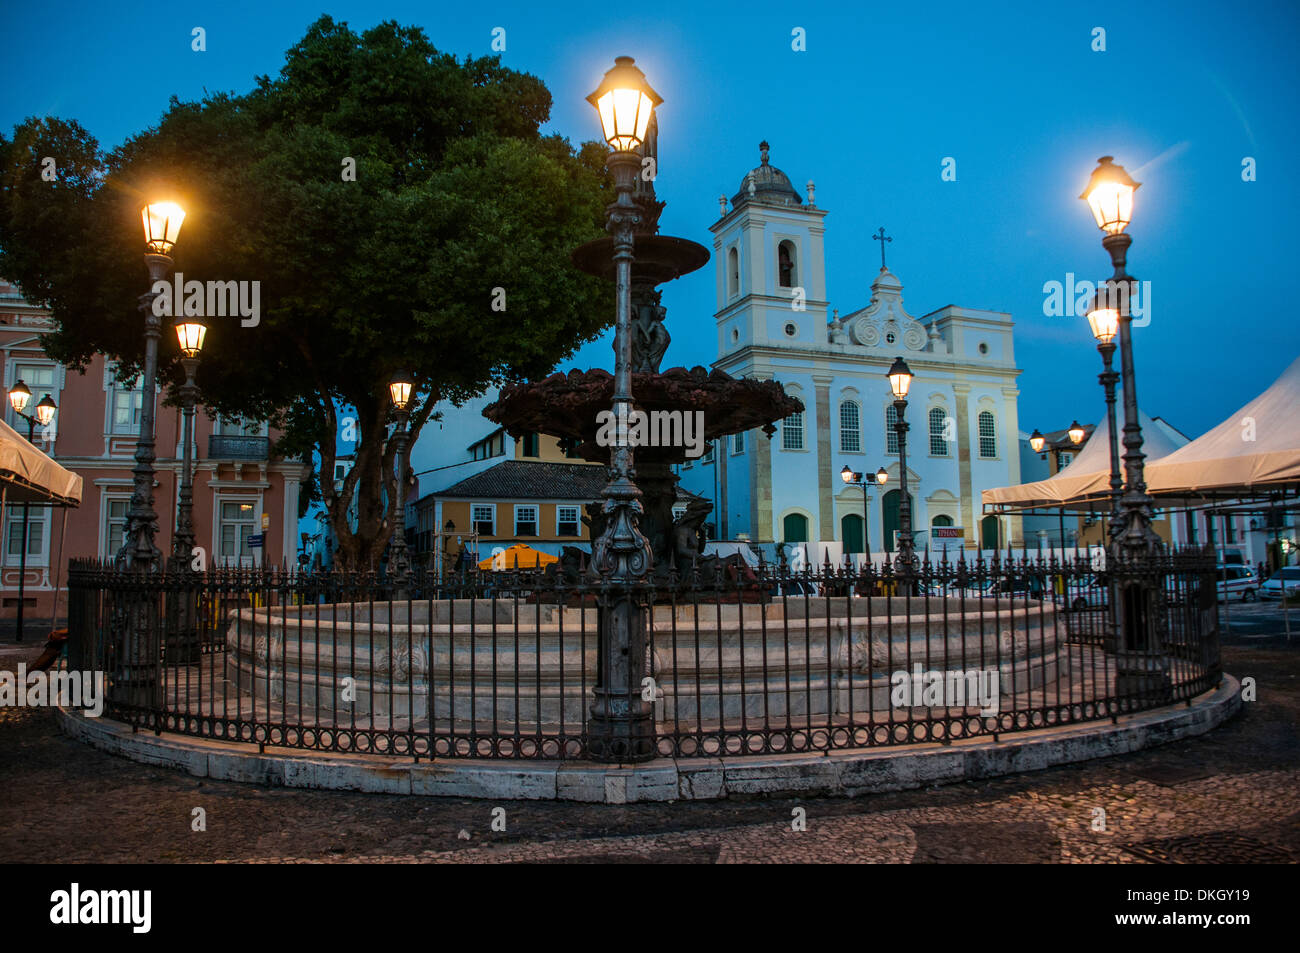 Nightshoot du 16 juin n'Square, Pelourinho, UNESCO World Heritage Site, Salvador, Bahia, Brésil, Amérique du Sud Banque D'Images